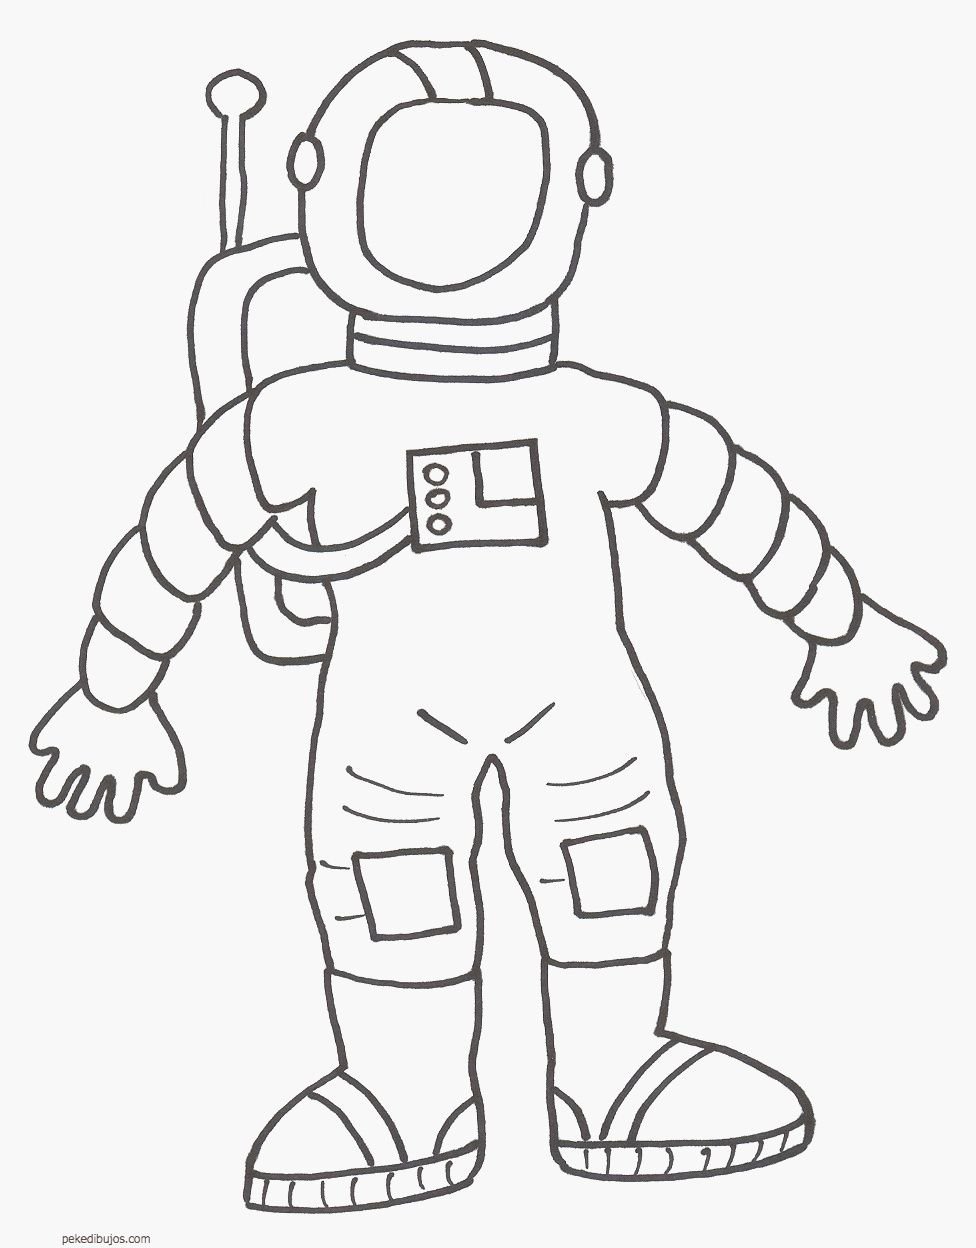 Скафандр раскраска. Космонавт рисунок для детей. Космонавт раскраска для детей. Раскраска космонавт в скафандре. Раскраска Космонавта в скафандре для детей.